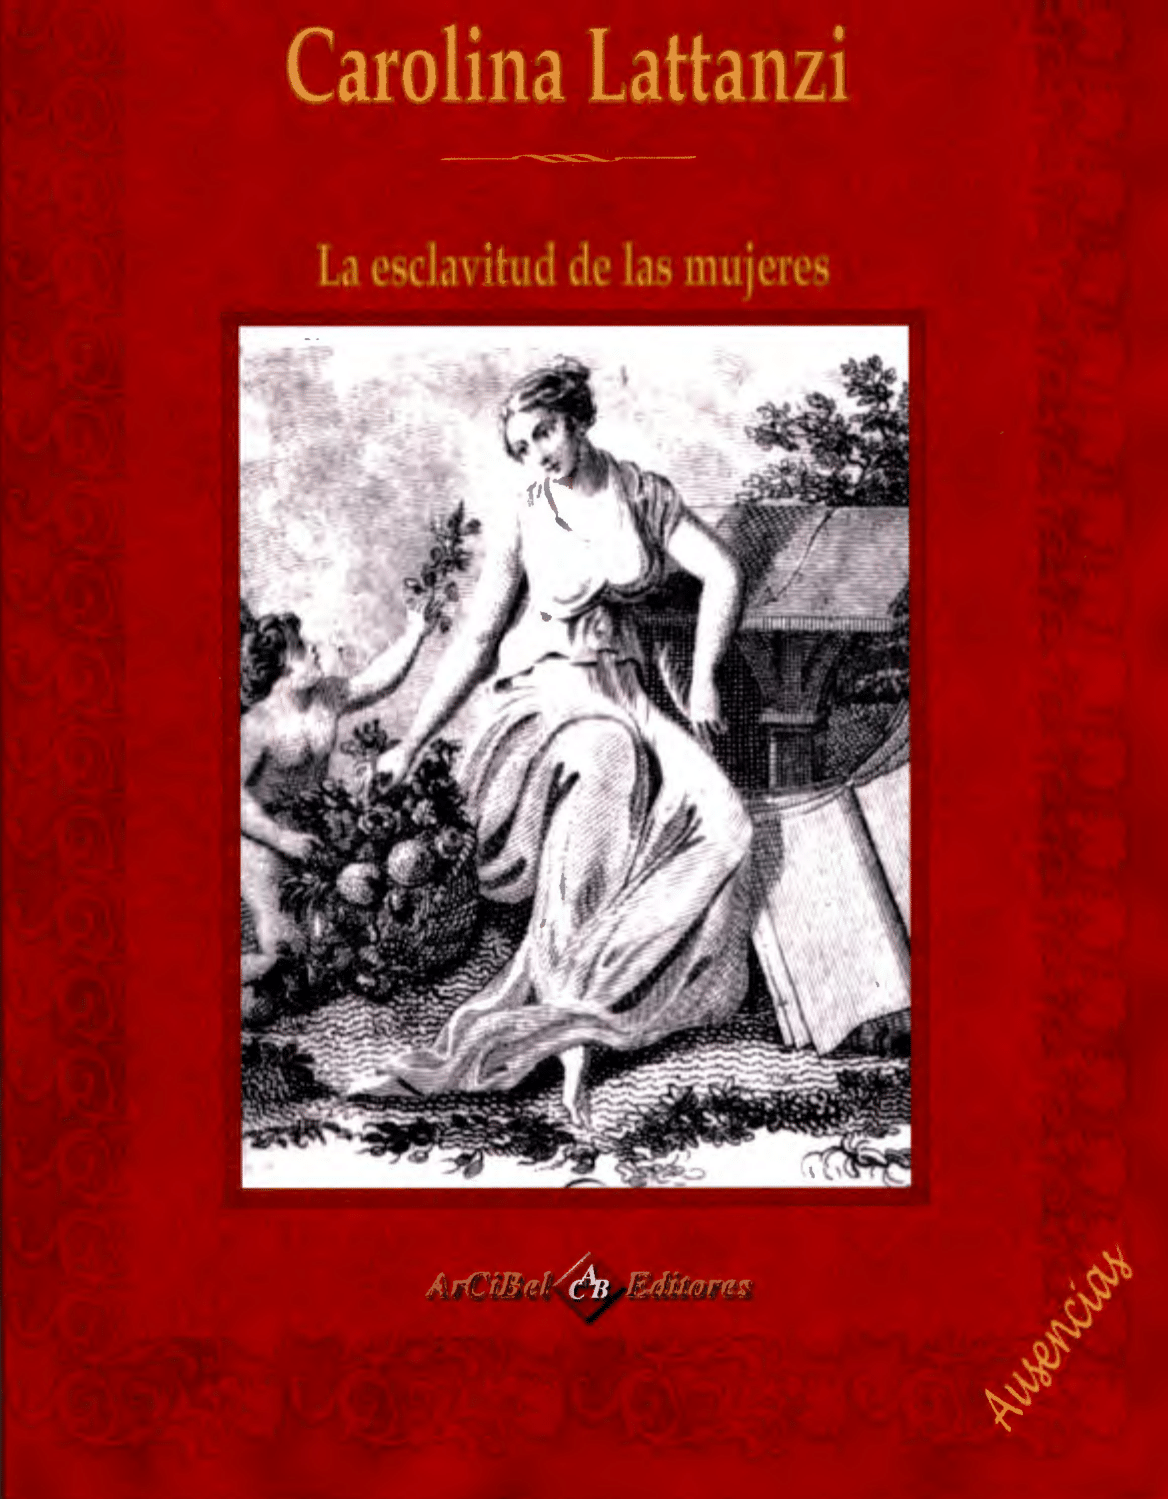 Imagen de portada del libro "La esclavitud de las mujeres" de Carolina Lattanzi y el discurso político de las mujeres en el Trienio jacobino